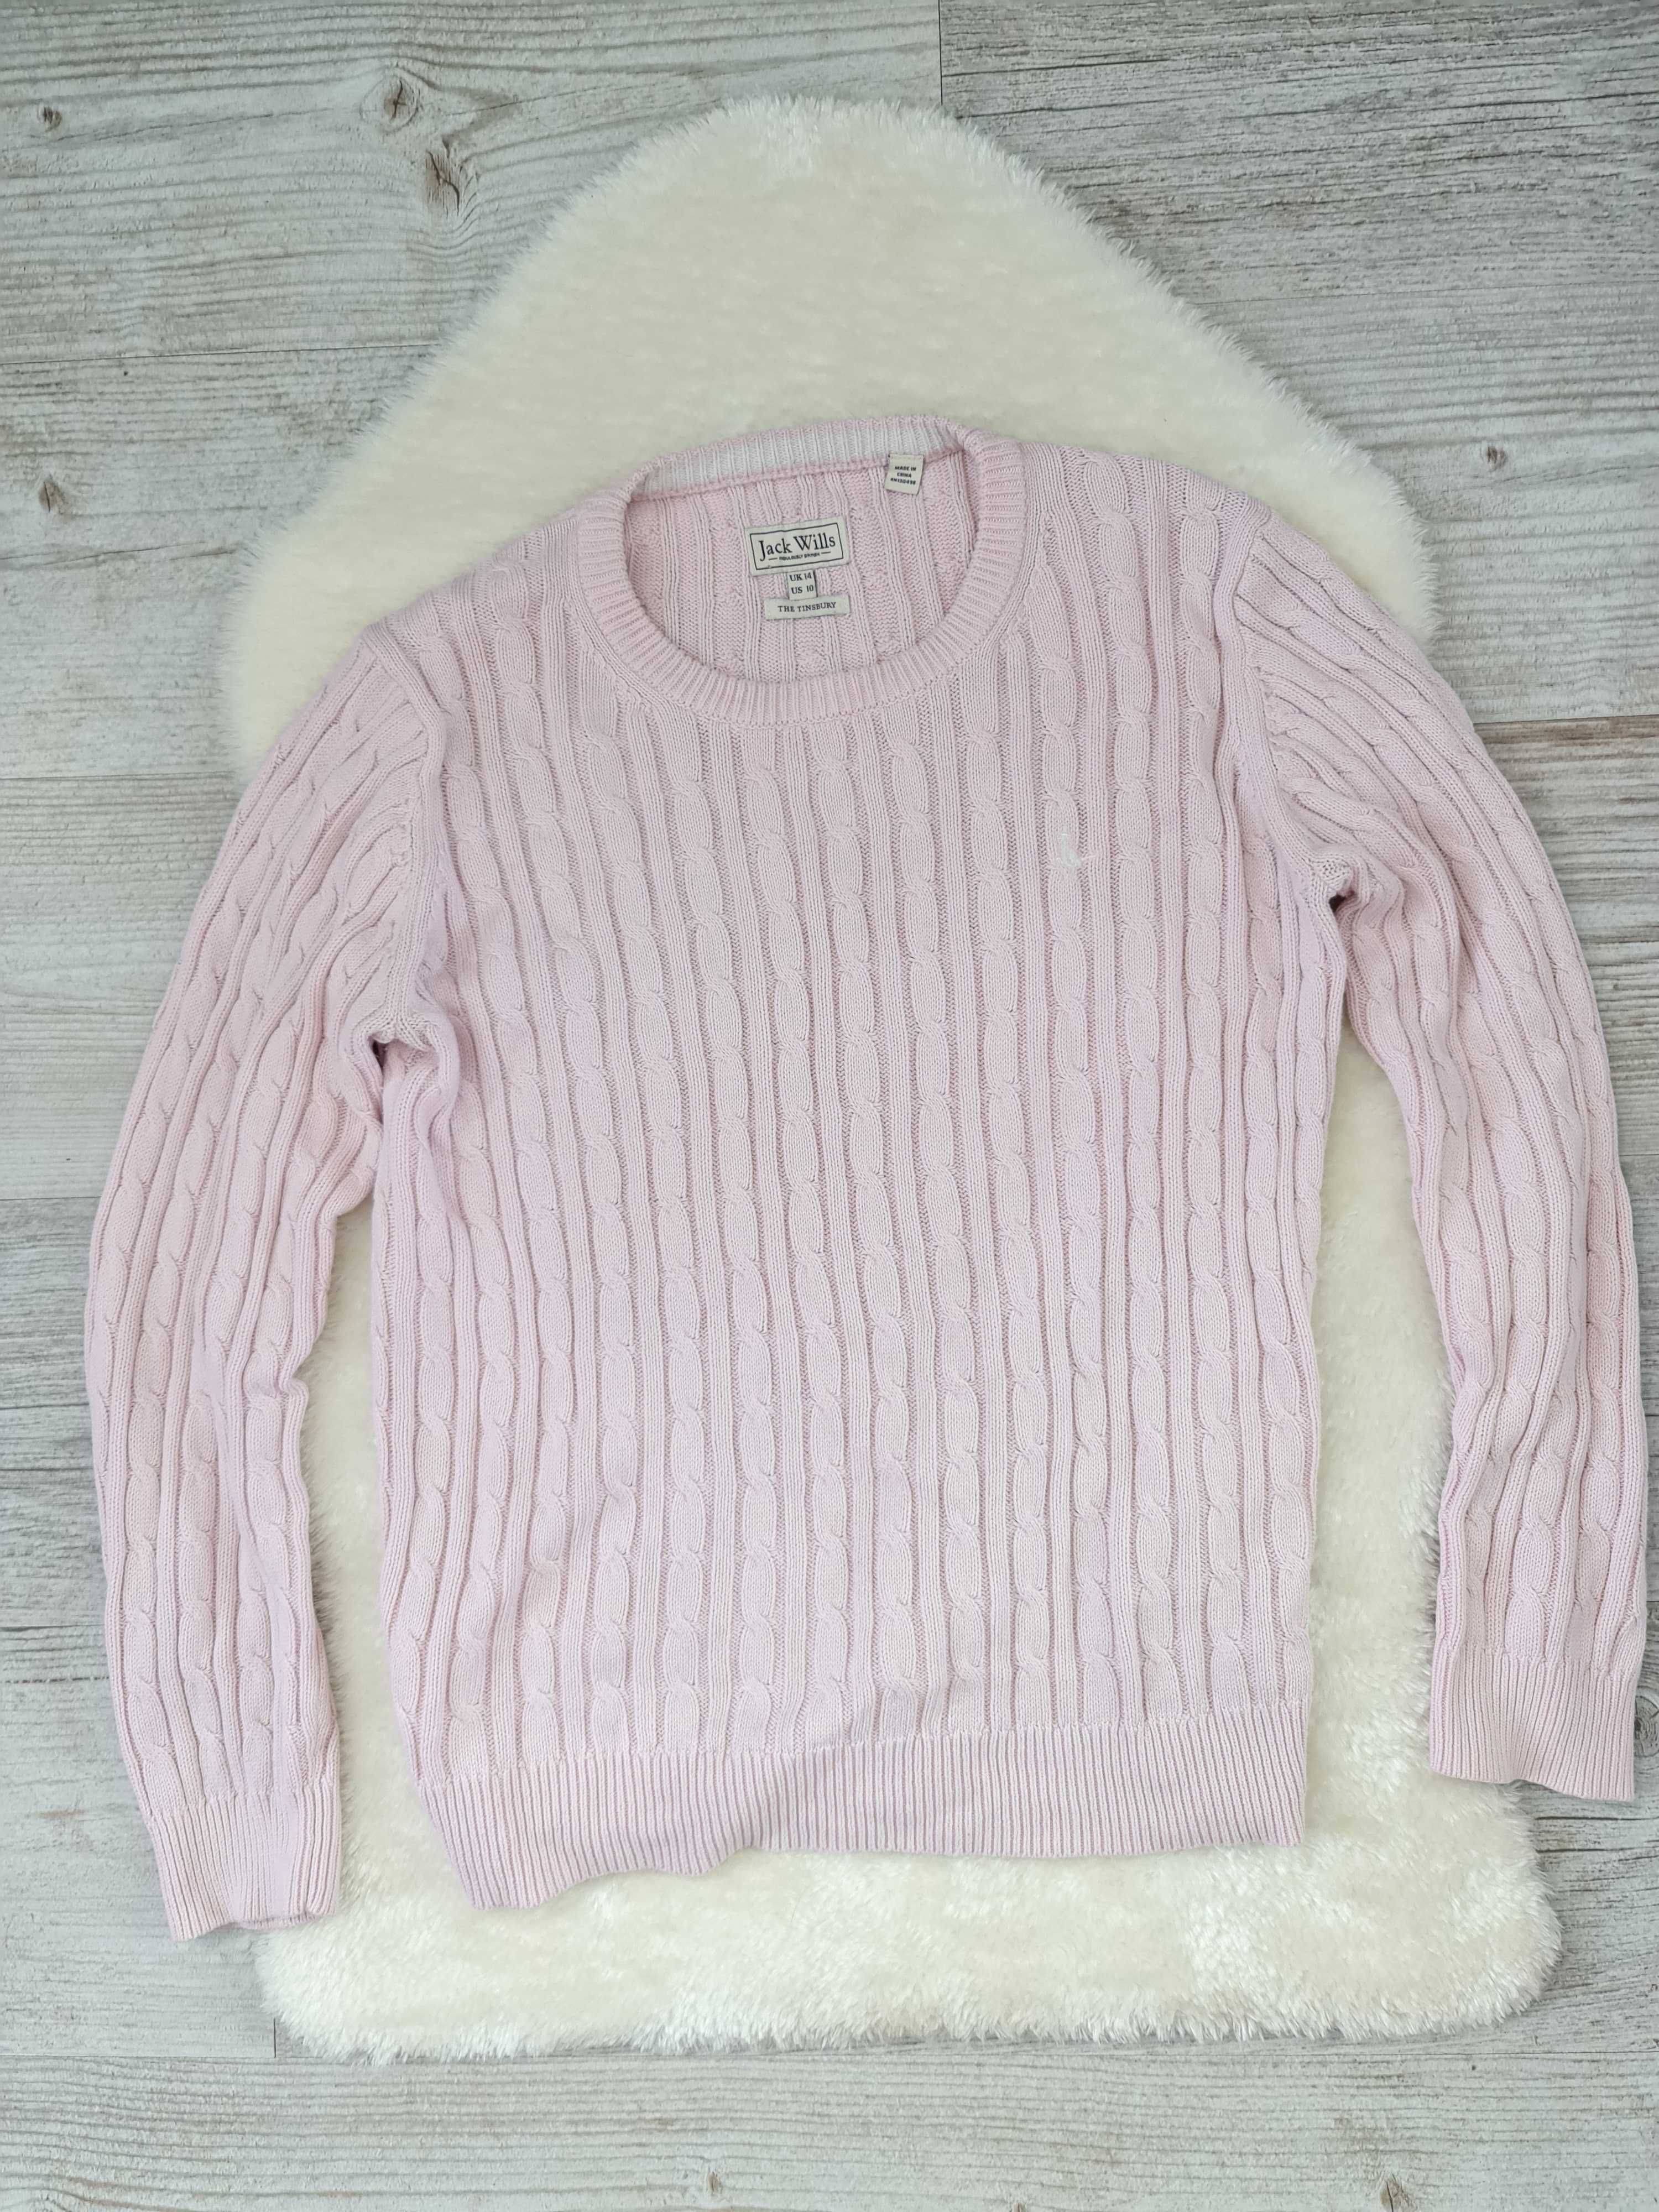 Sweter Jack Wills Różowy , Pudrowy Róż Rozmiar M 100% Bawełna Sweterek